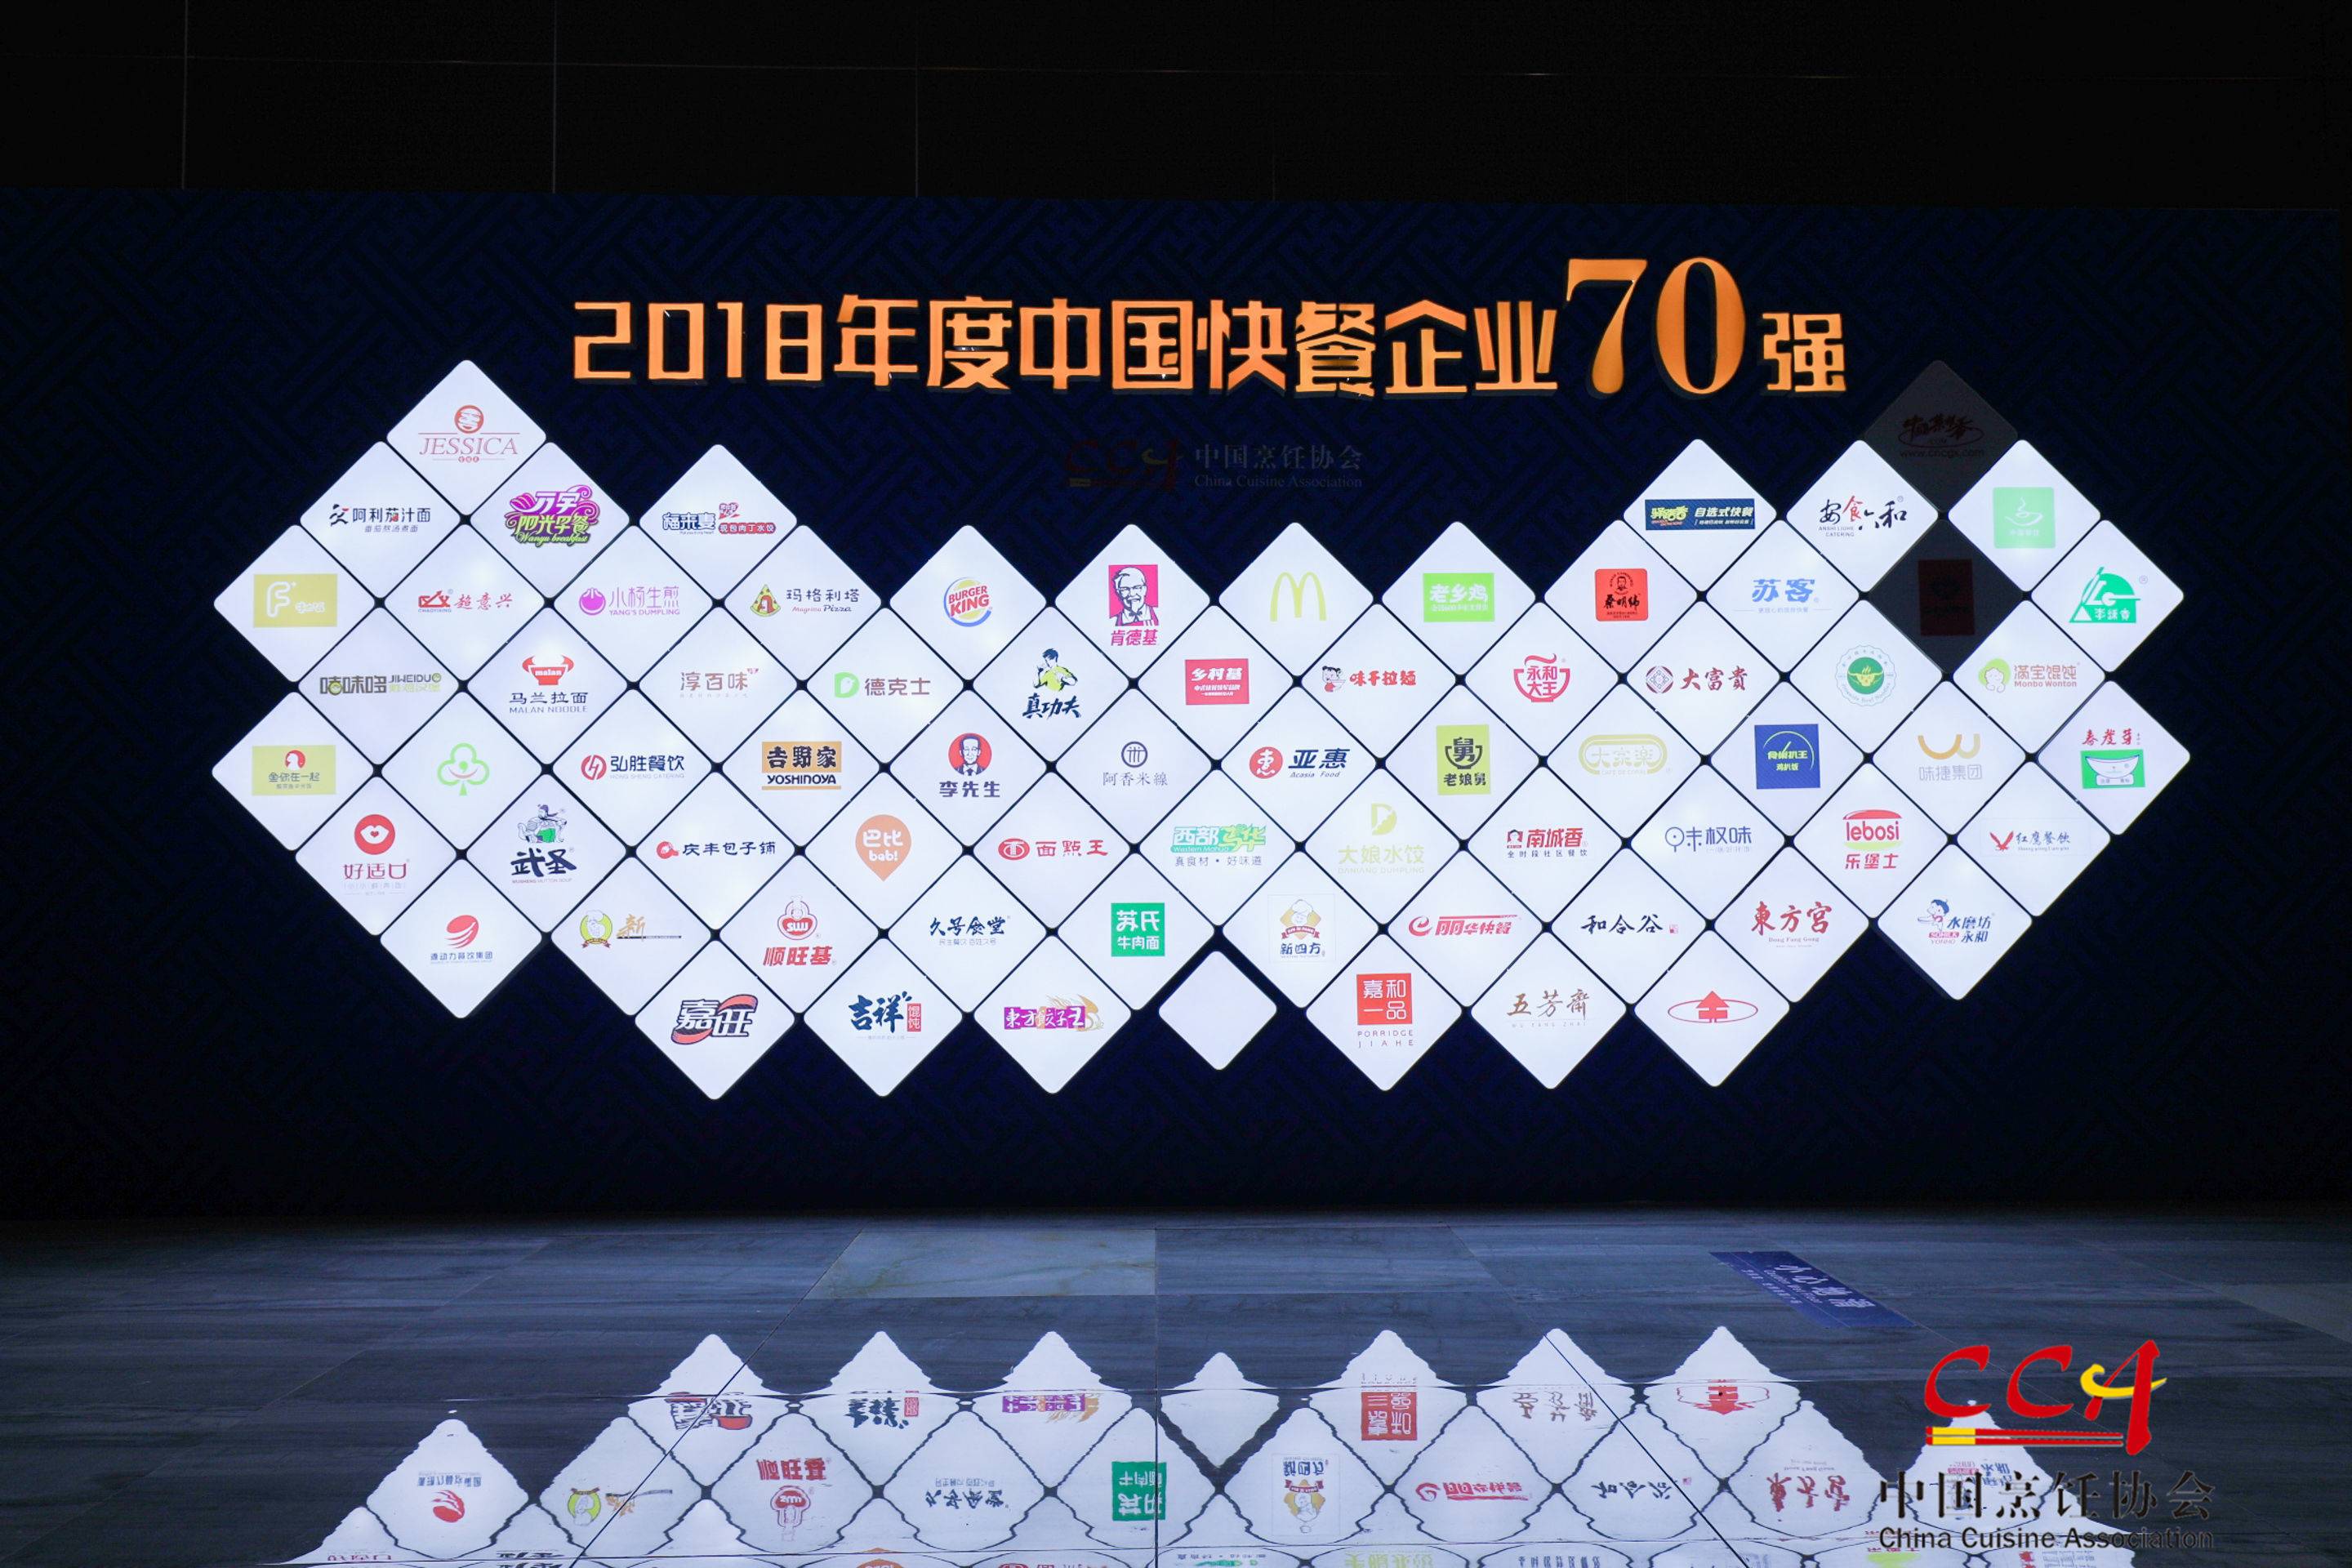 2018年度中國快餐企業70強，魚你在一起連續兩年入圍榜單